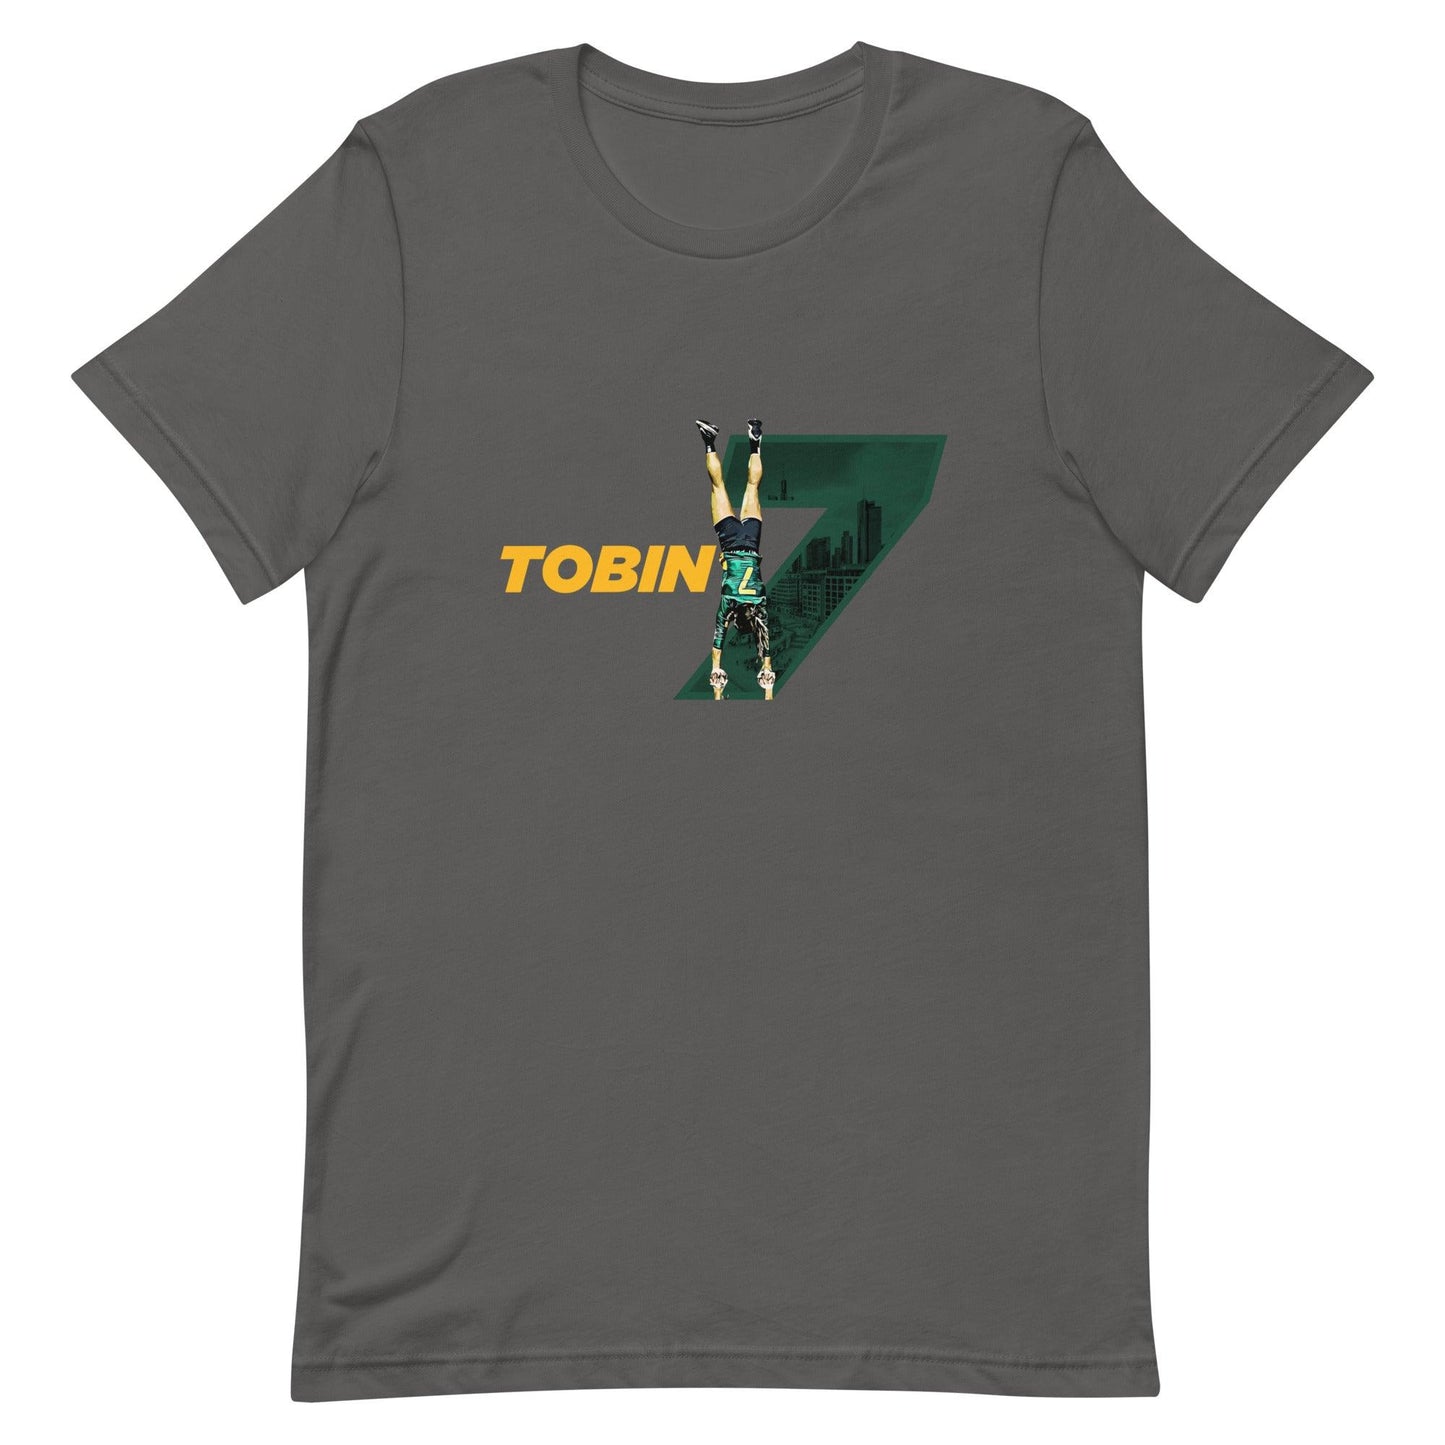 Emily Tobin "Inspire" t-shirt - Fan Arch